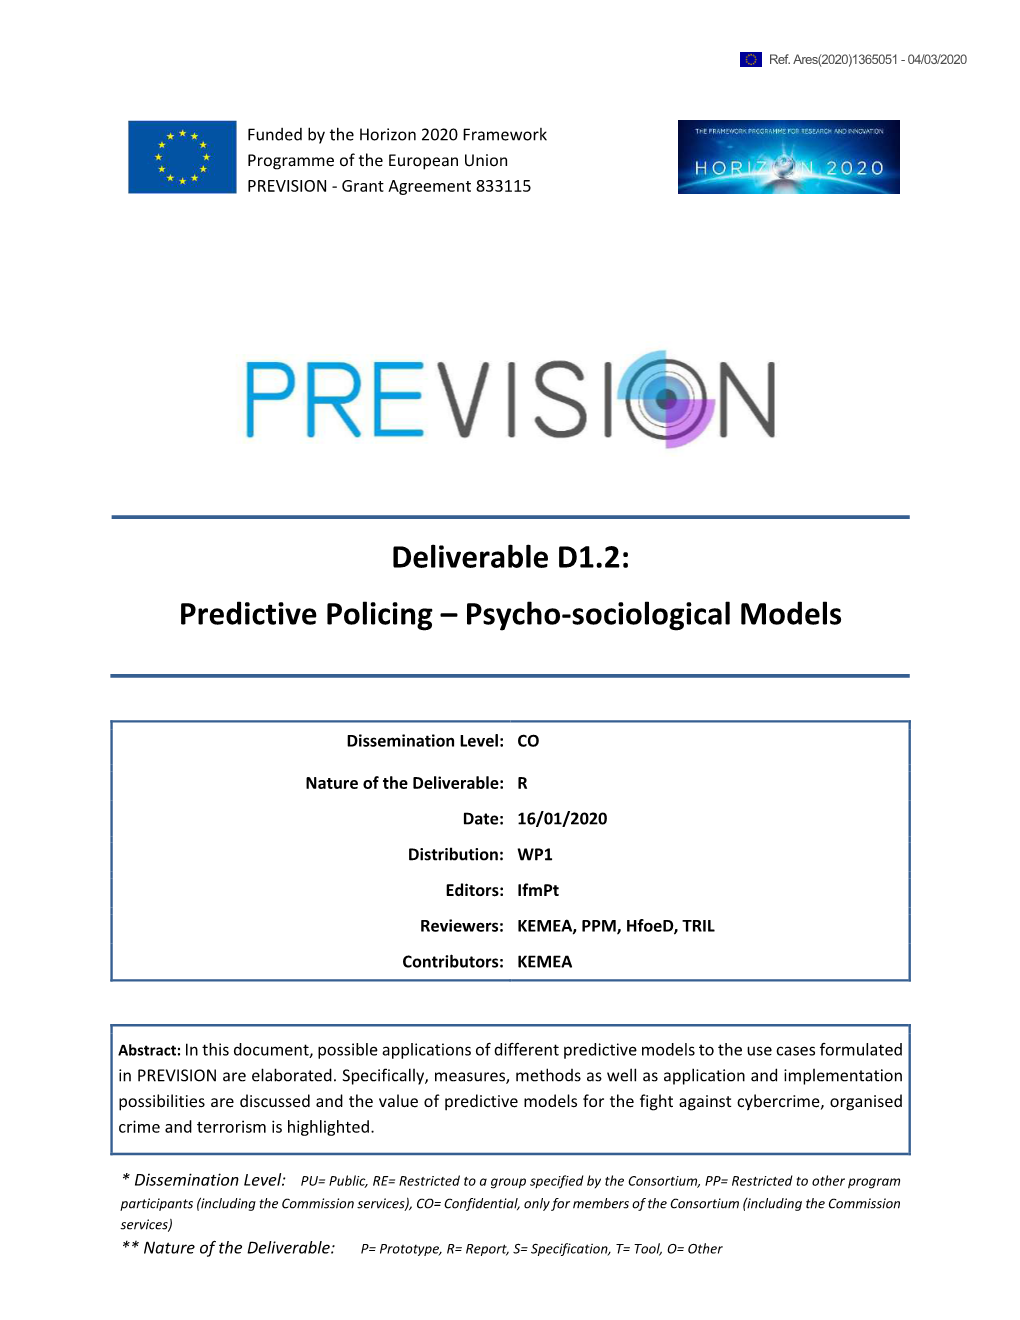 Predictive Policing – Psycho-Sociological Models